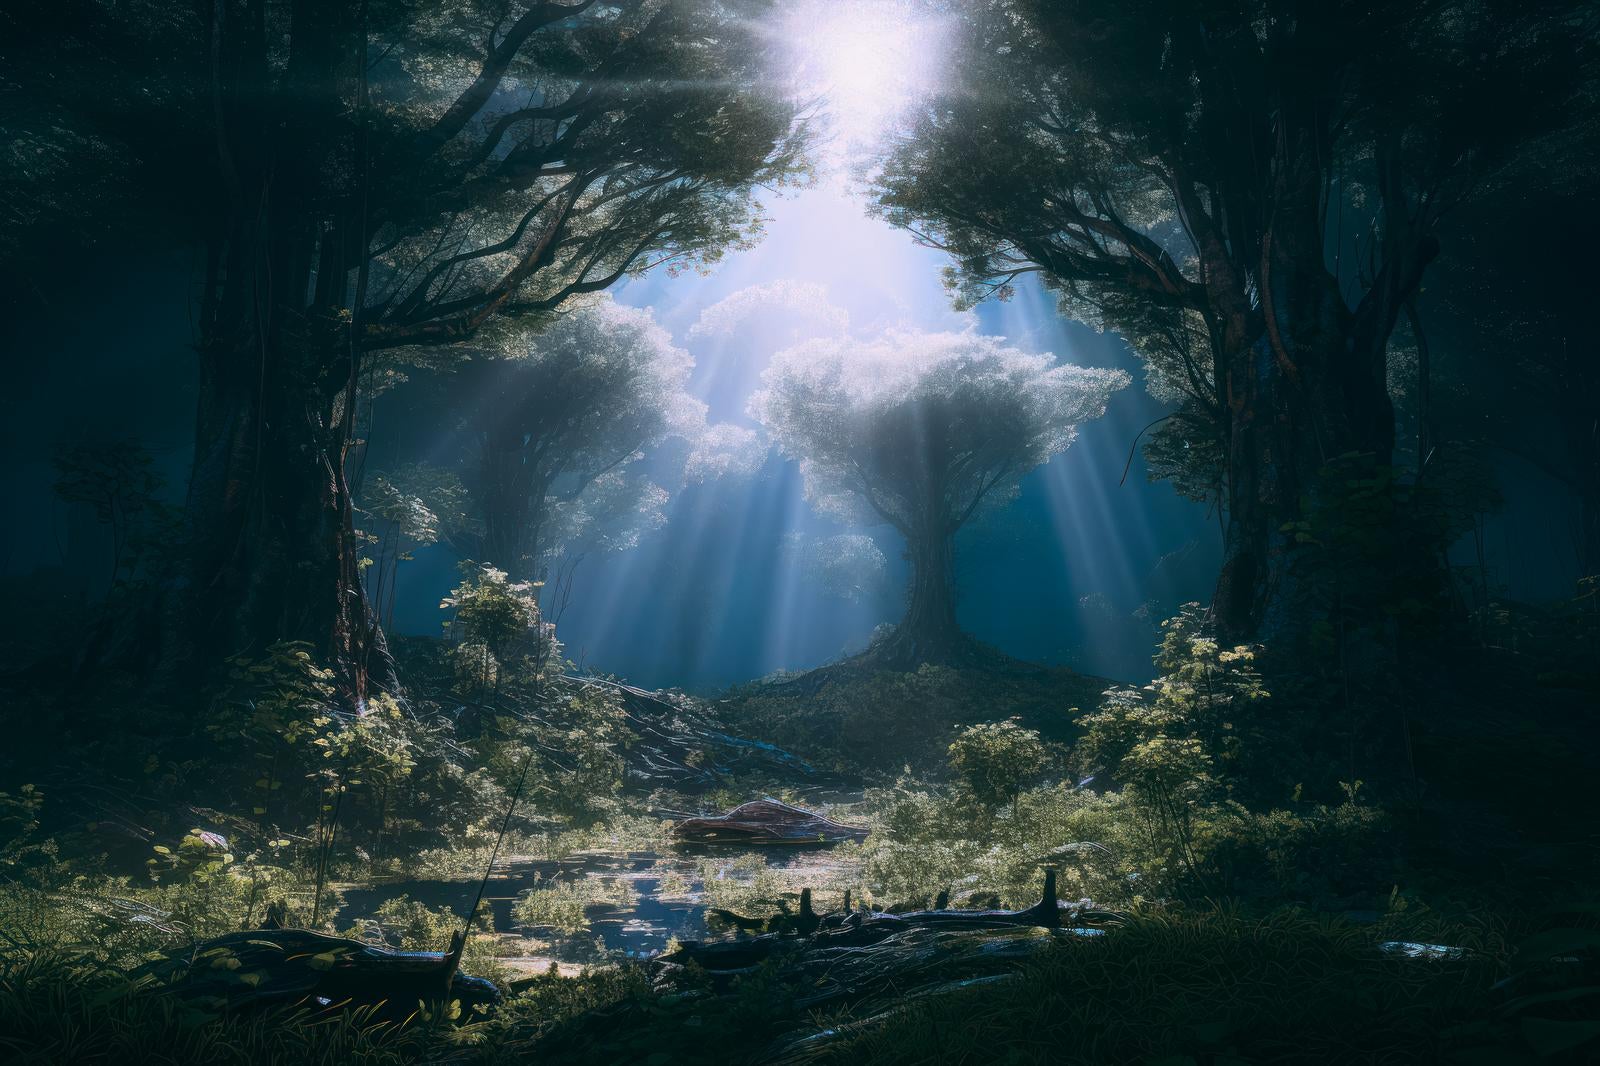 「森の中の光のハーモニー 木漏れ日の交錯」の写真